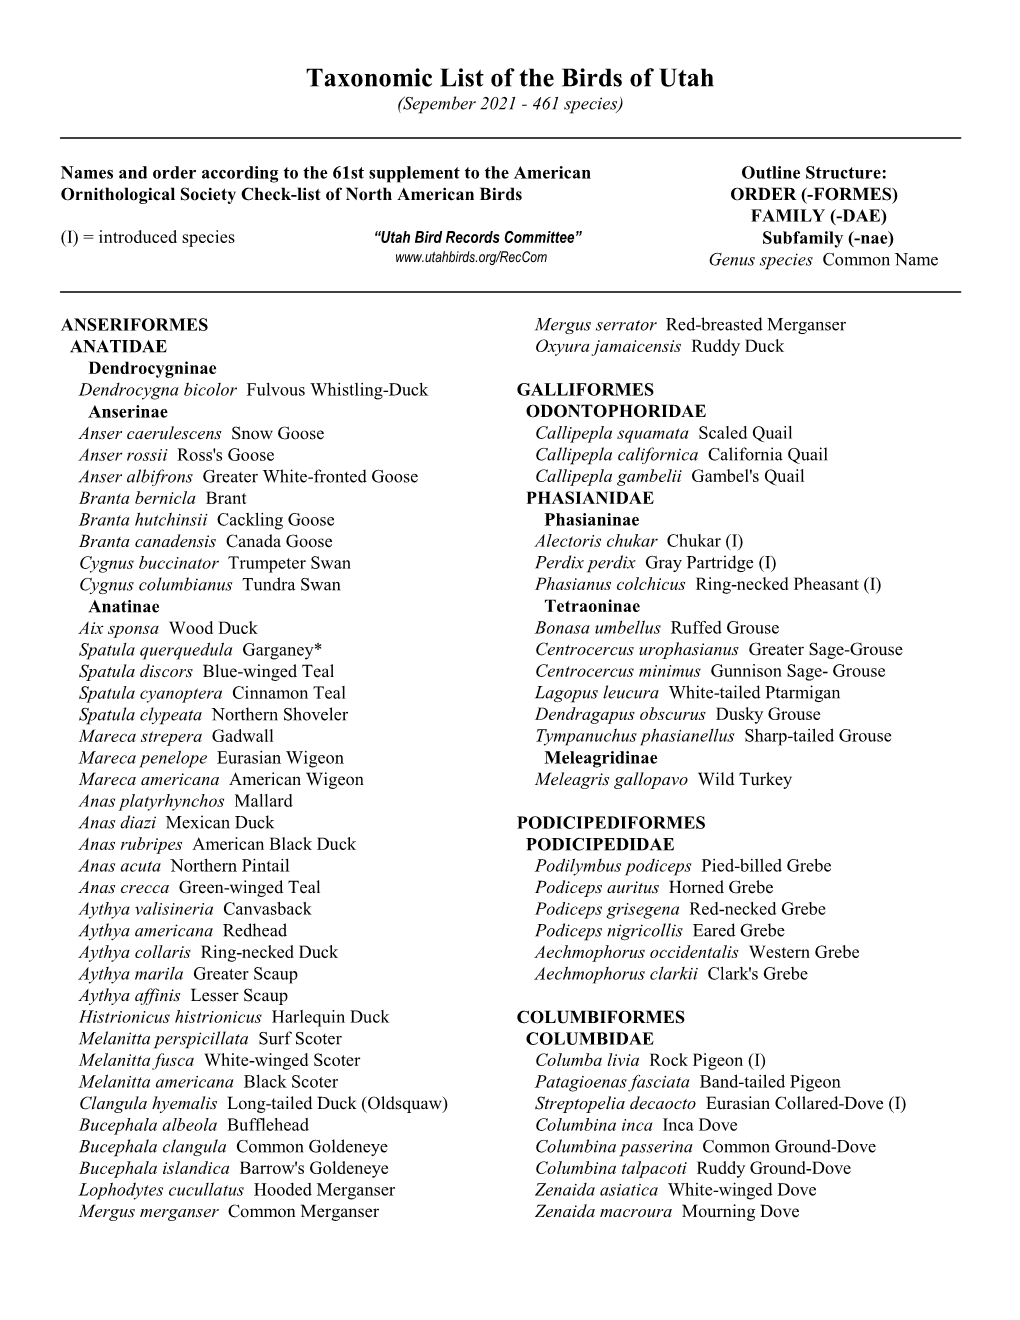 Taxonomic List of the Birds of Utah (Sepember 2021 - 461 Species)